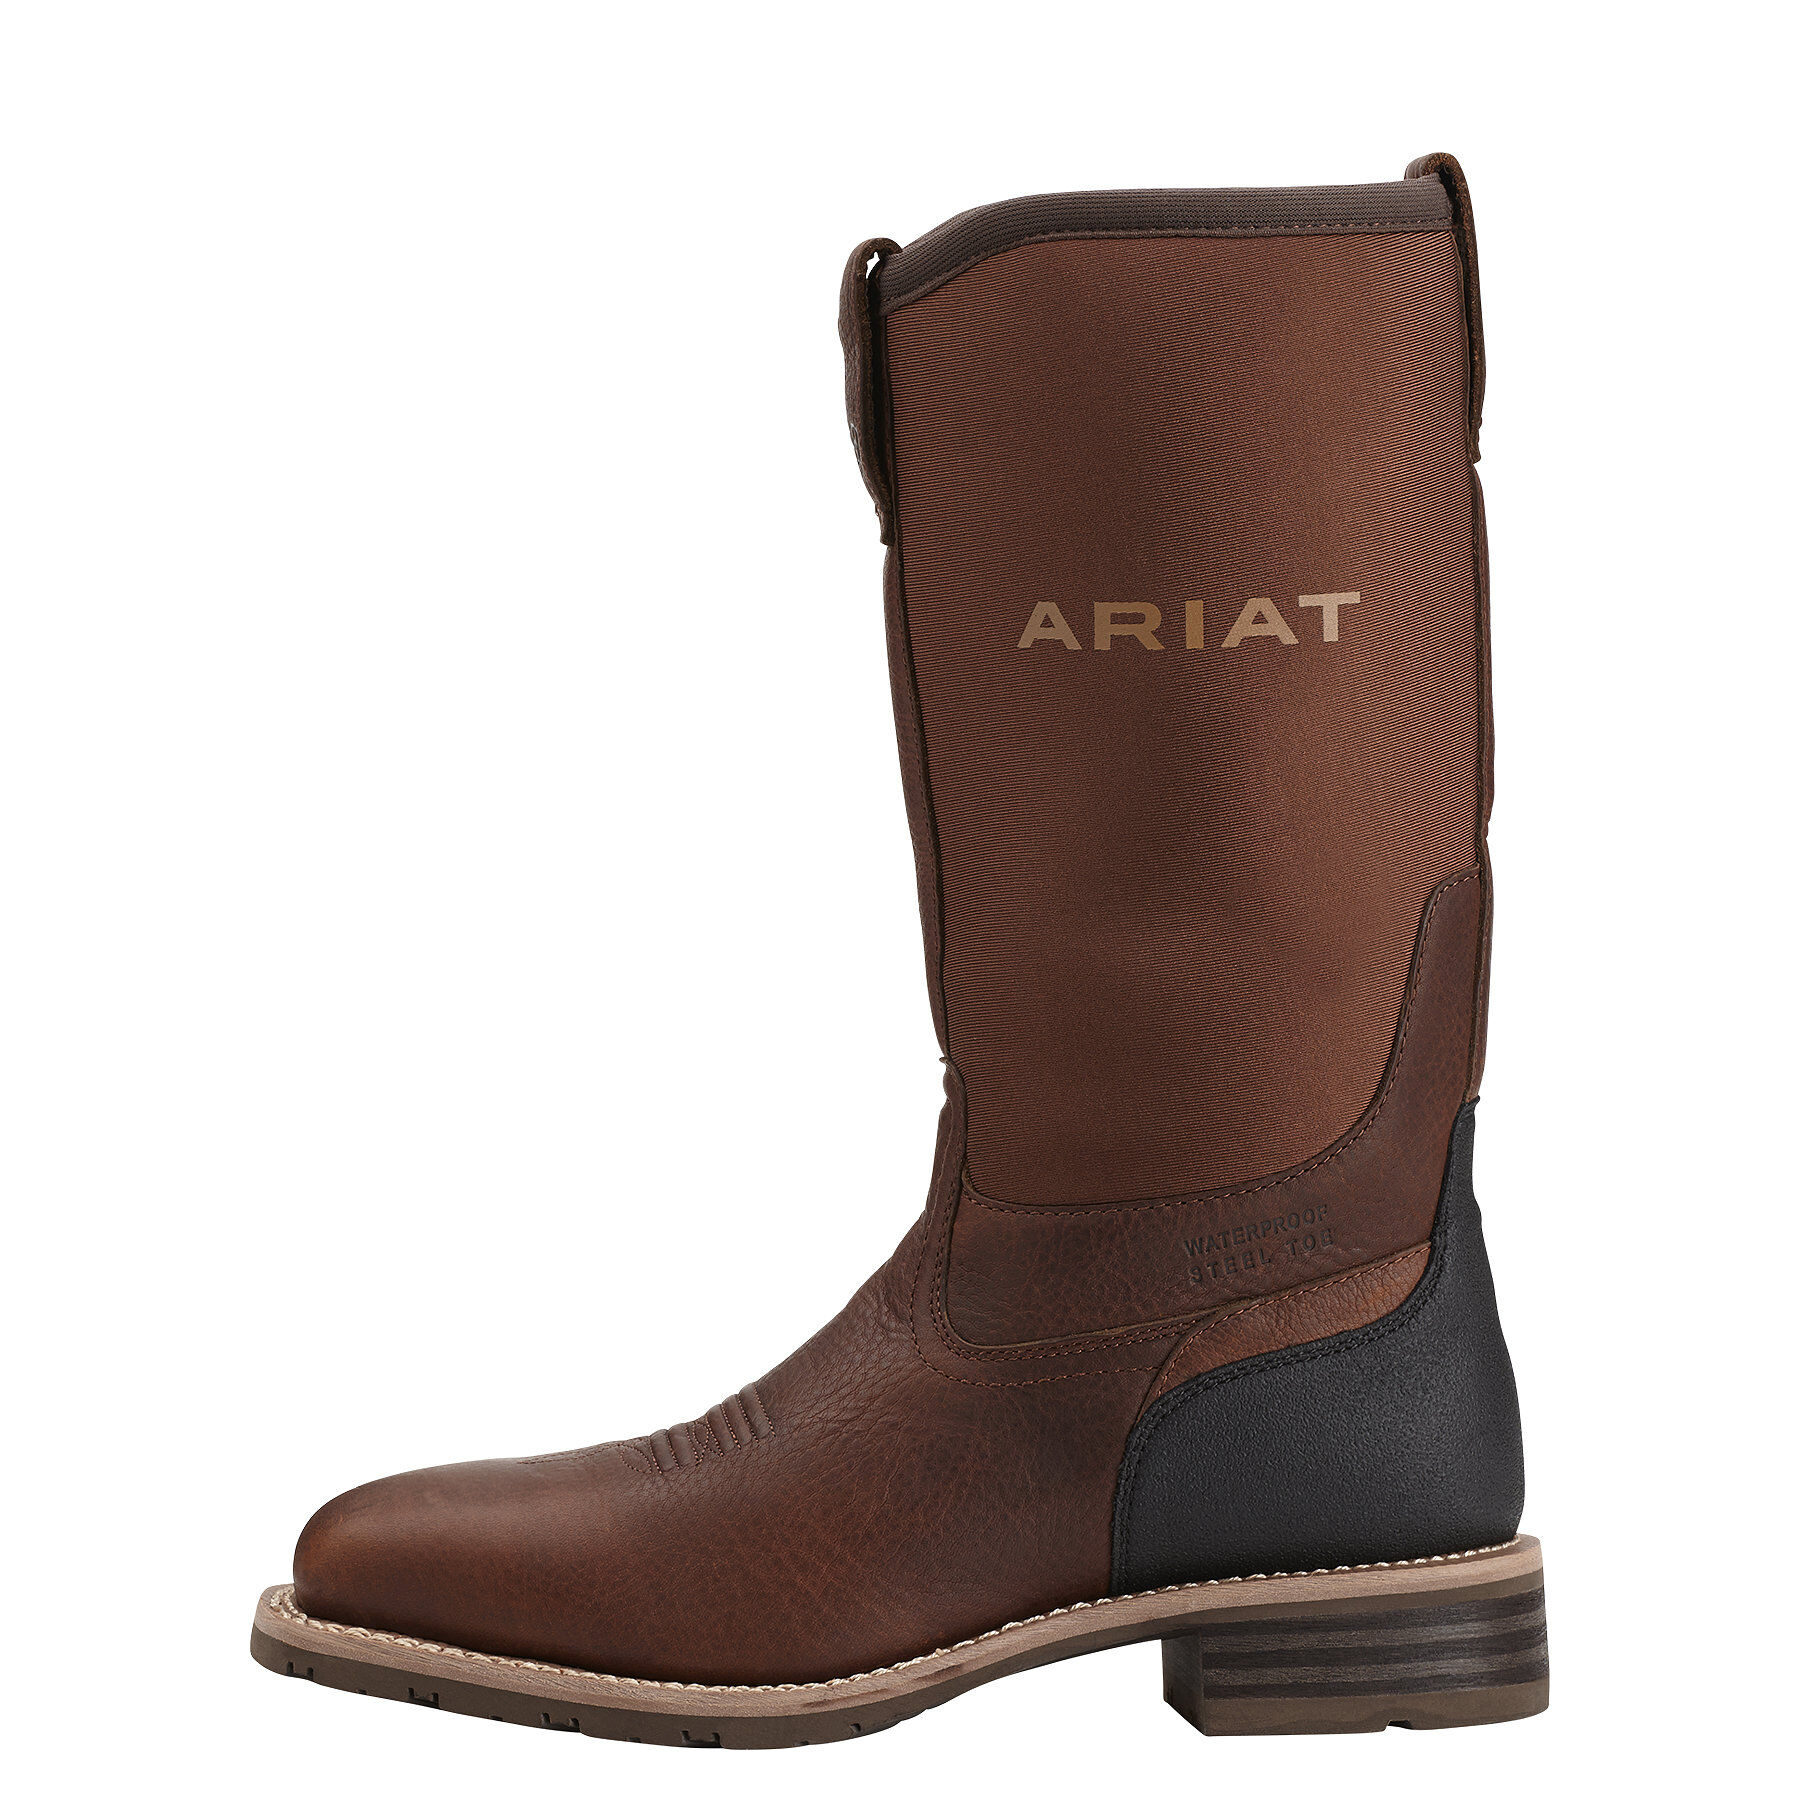 ariat women's waterproof work boots